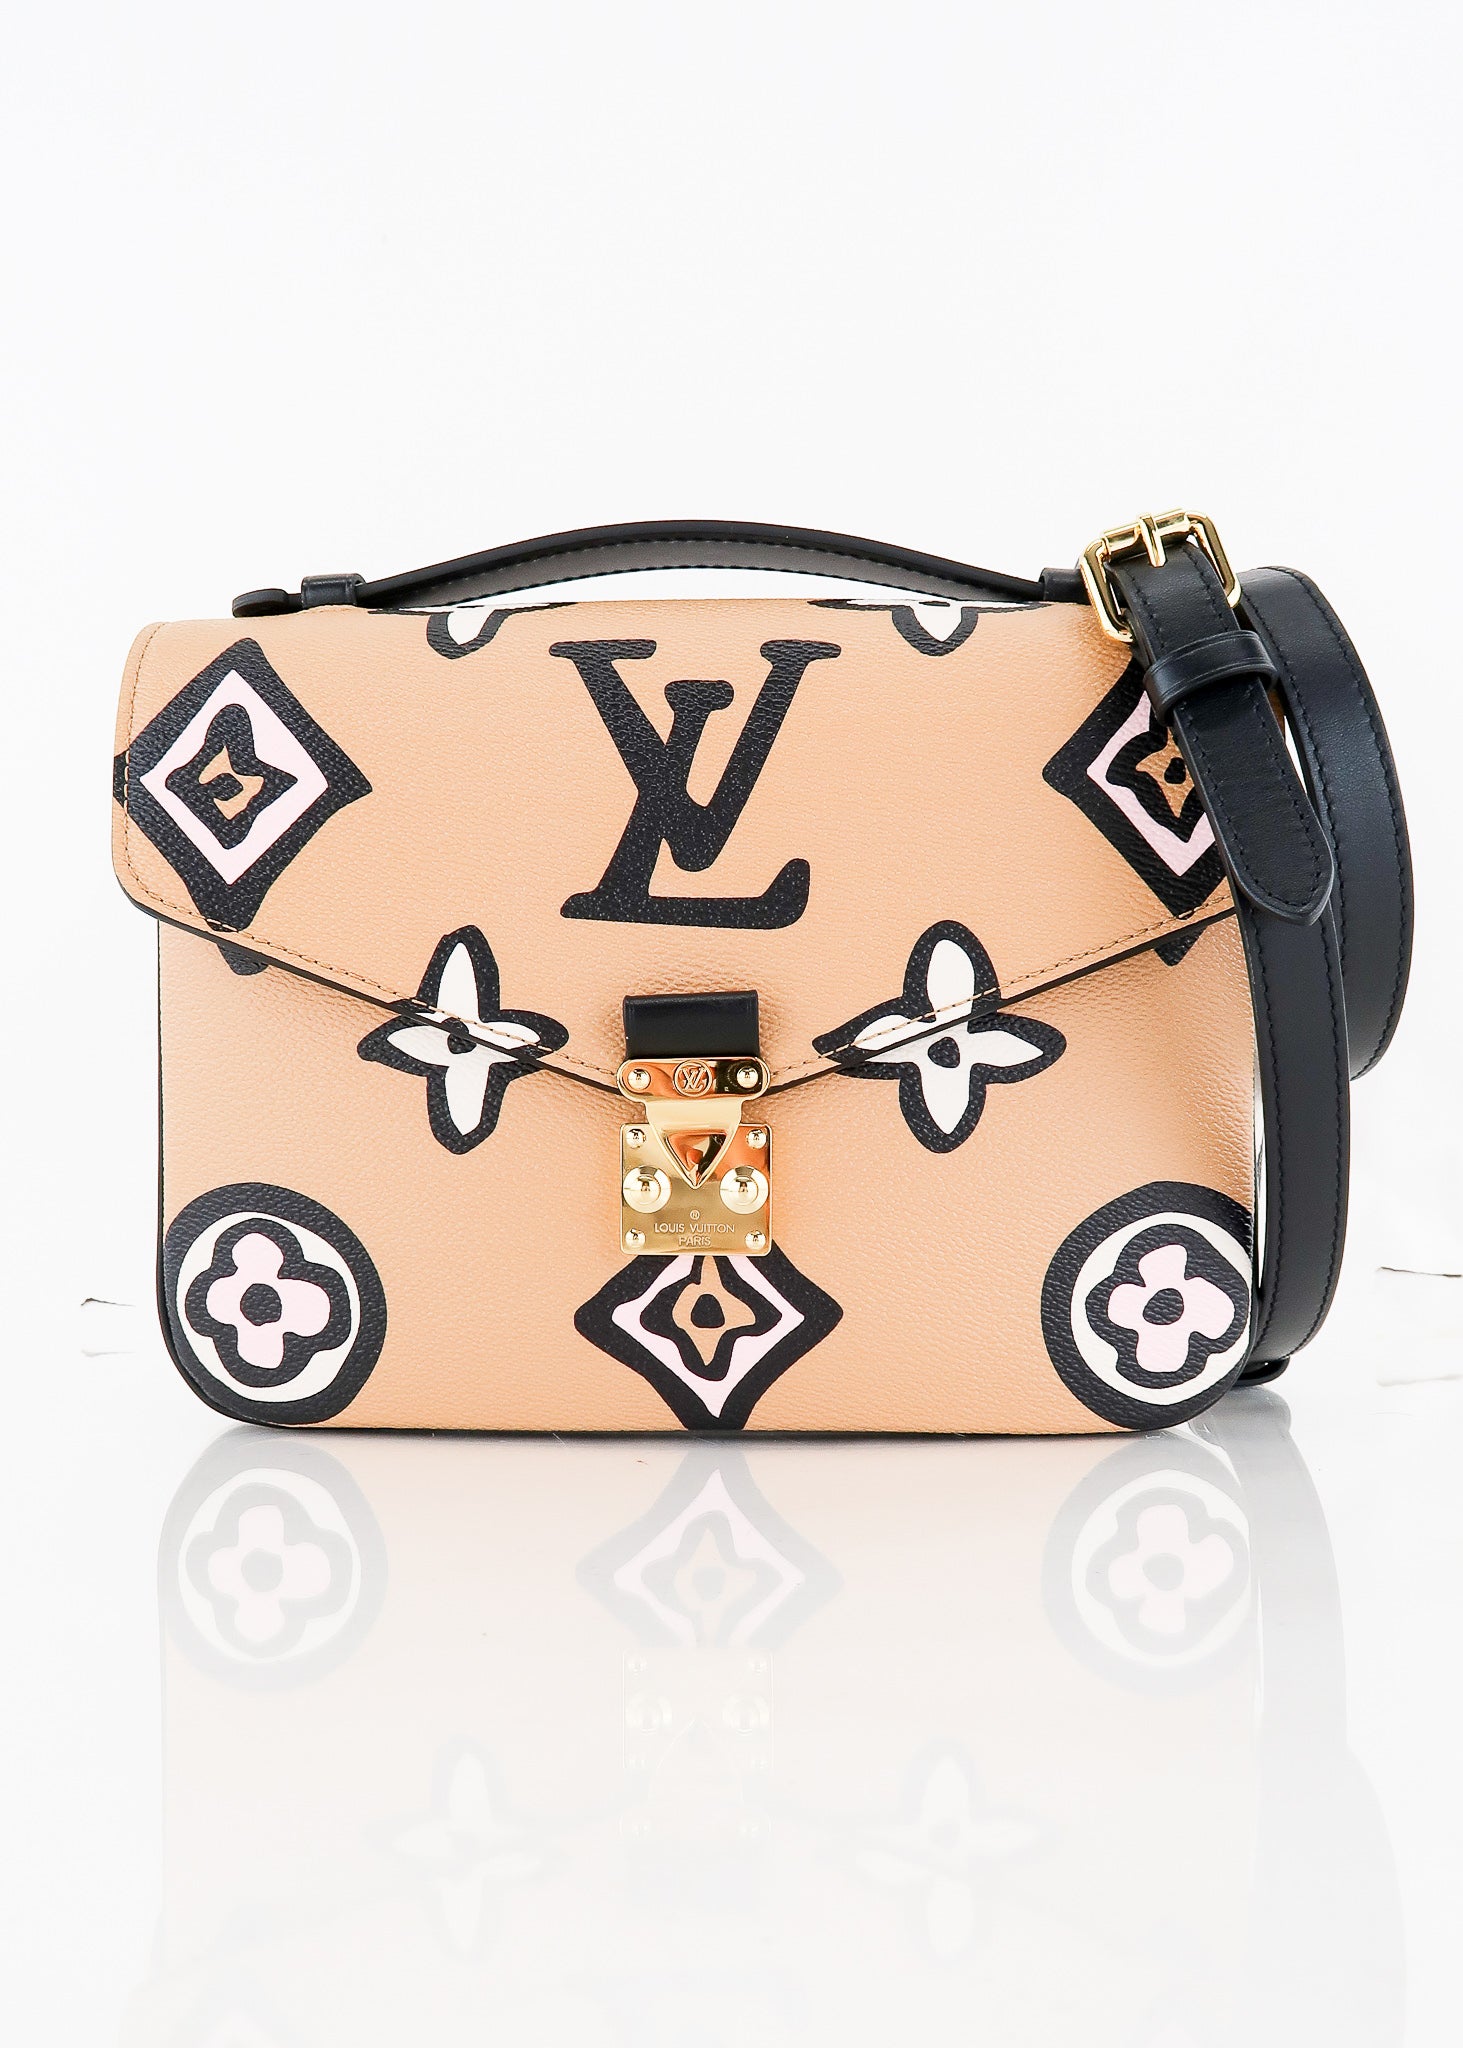 LVoe the Louis Vuitton Pochette Metis, Packs a Punch!  Louis vuitton bag, Louis  vuitton handbags, Louis vuitton